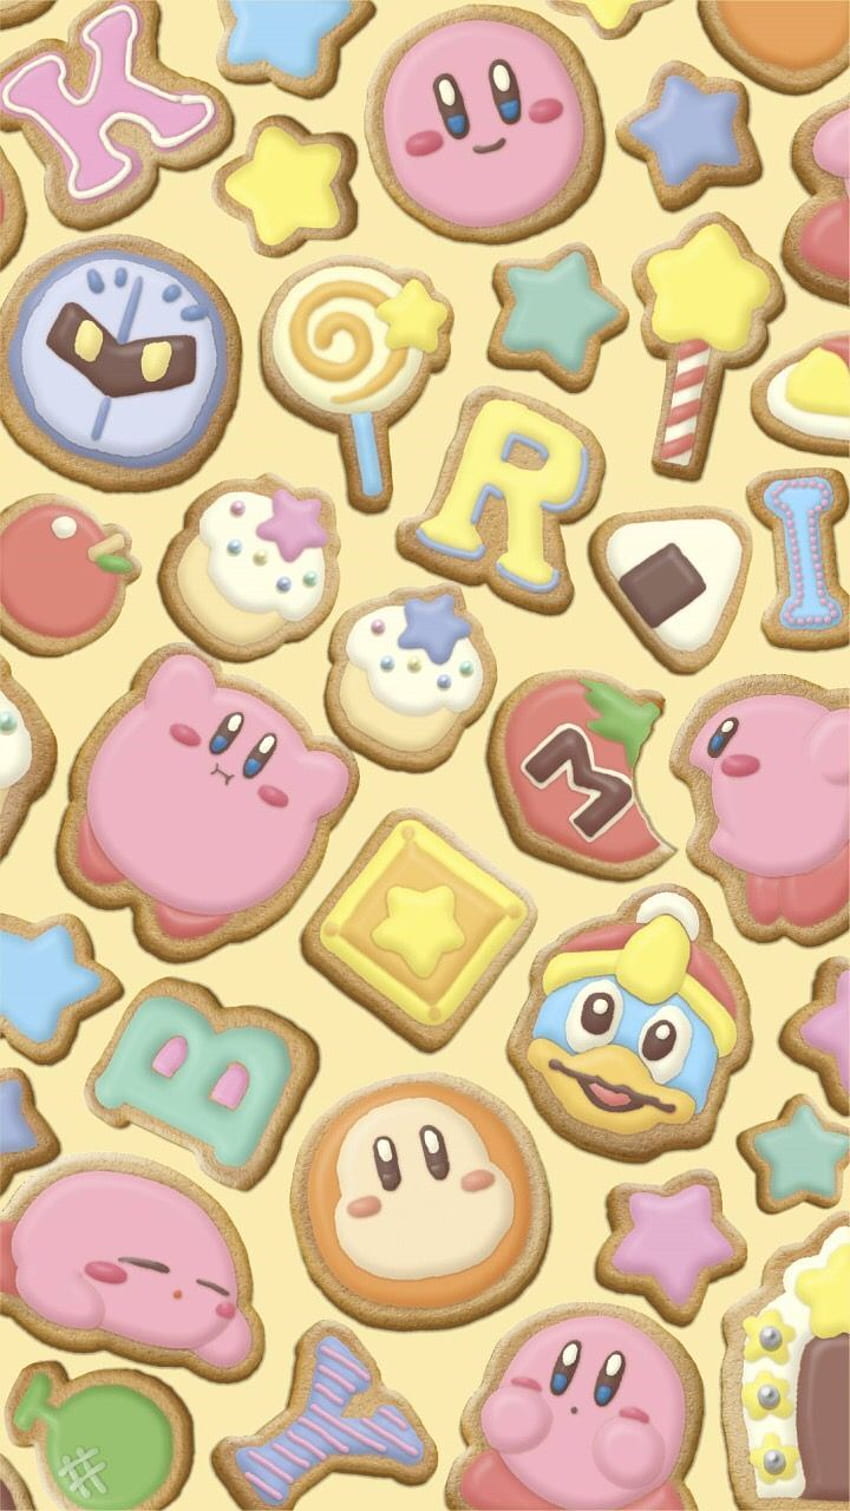 Ponsel LINE Kirby milik Nintendo. Karakter Kirby, Kirby, game Kirby, Cool Kirby wallpaper ponsel HD